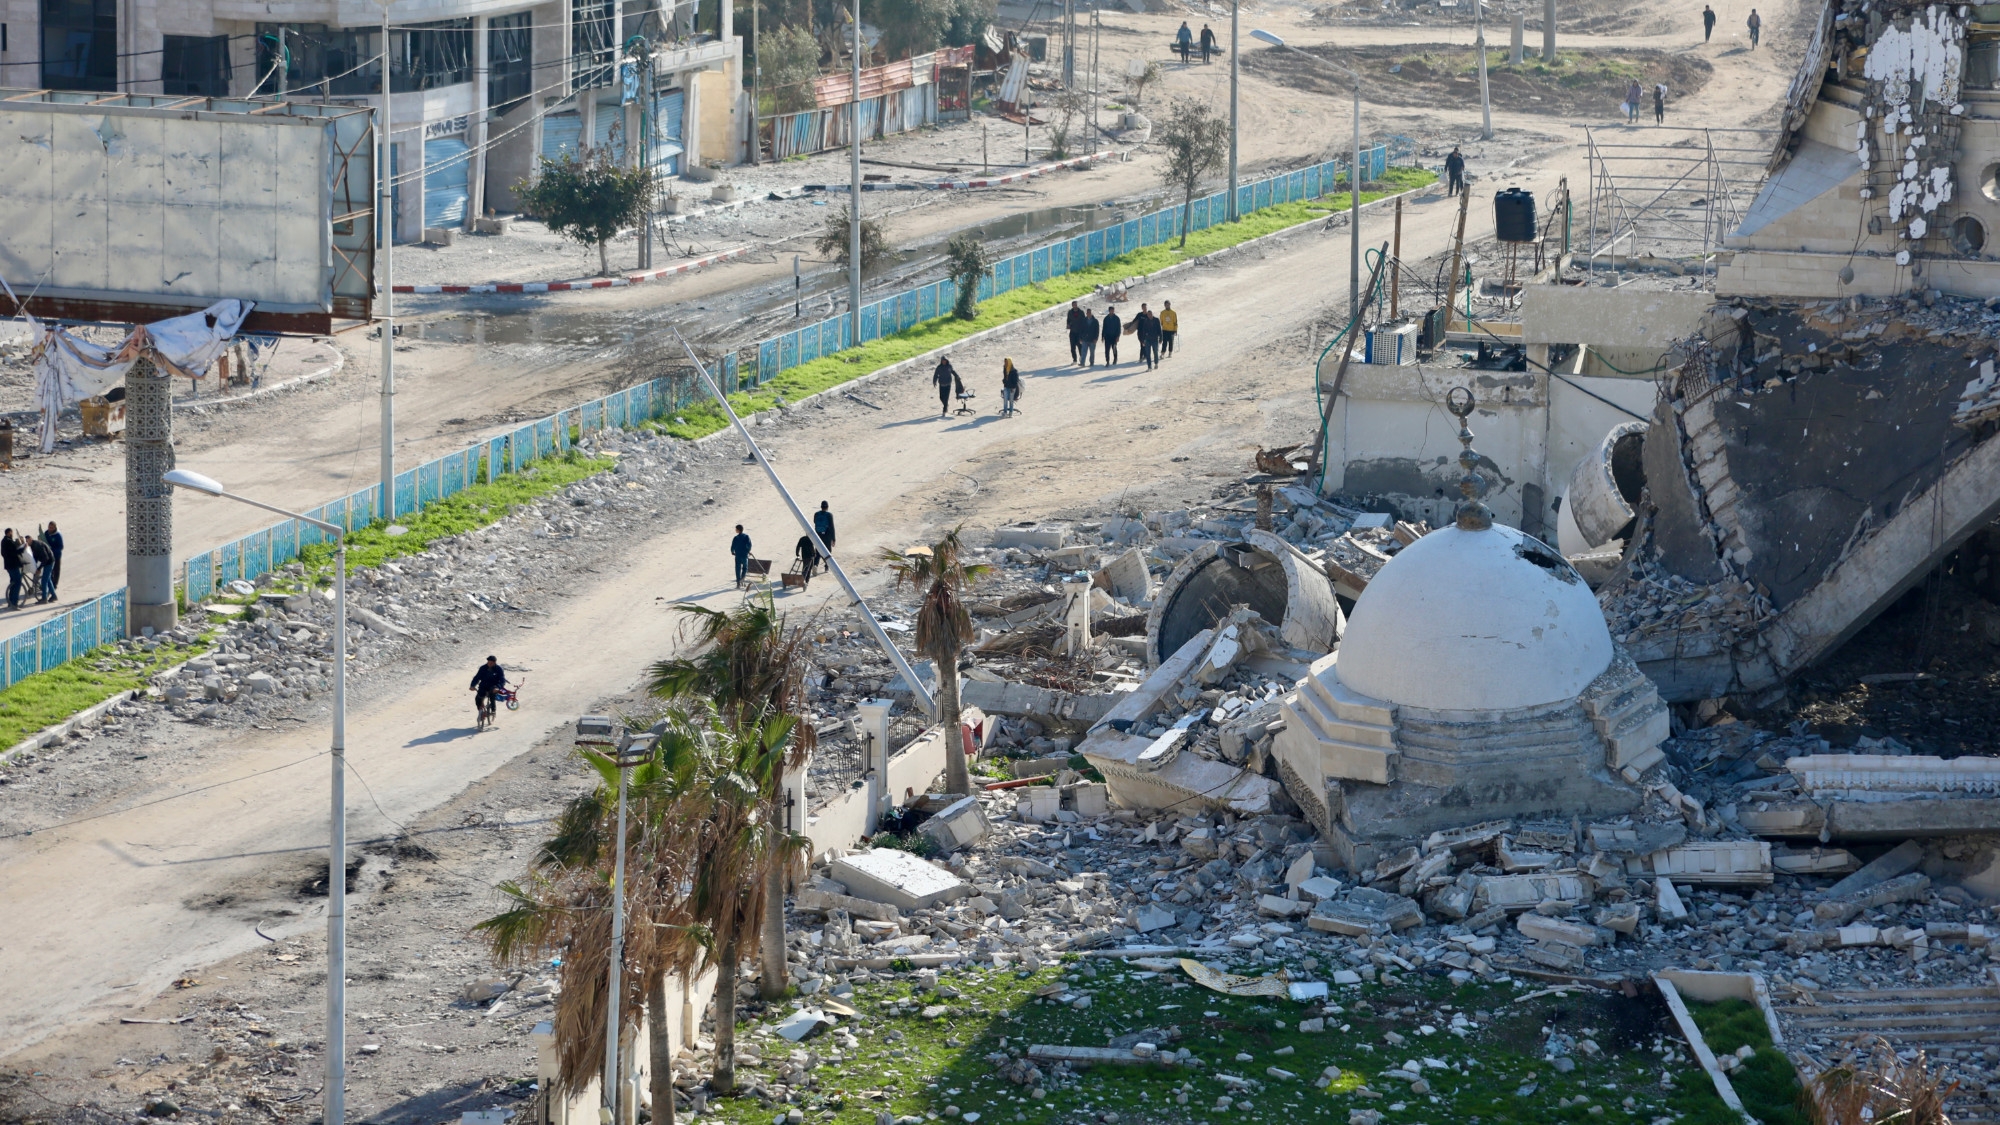 La grande mosquée al-Hassina fait partie des bâtiments détruits lors de l’assaut israélien dans la ville de Gaza (MEE/Mohammed al-Hajjar)